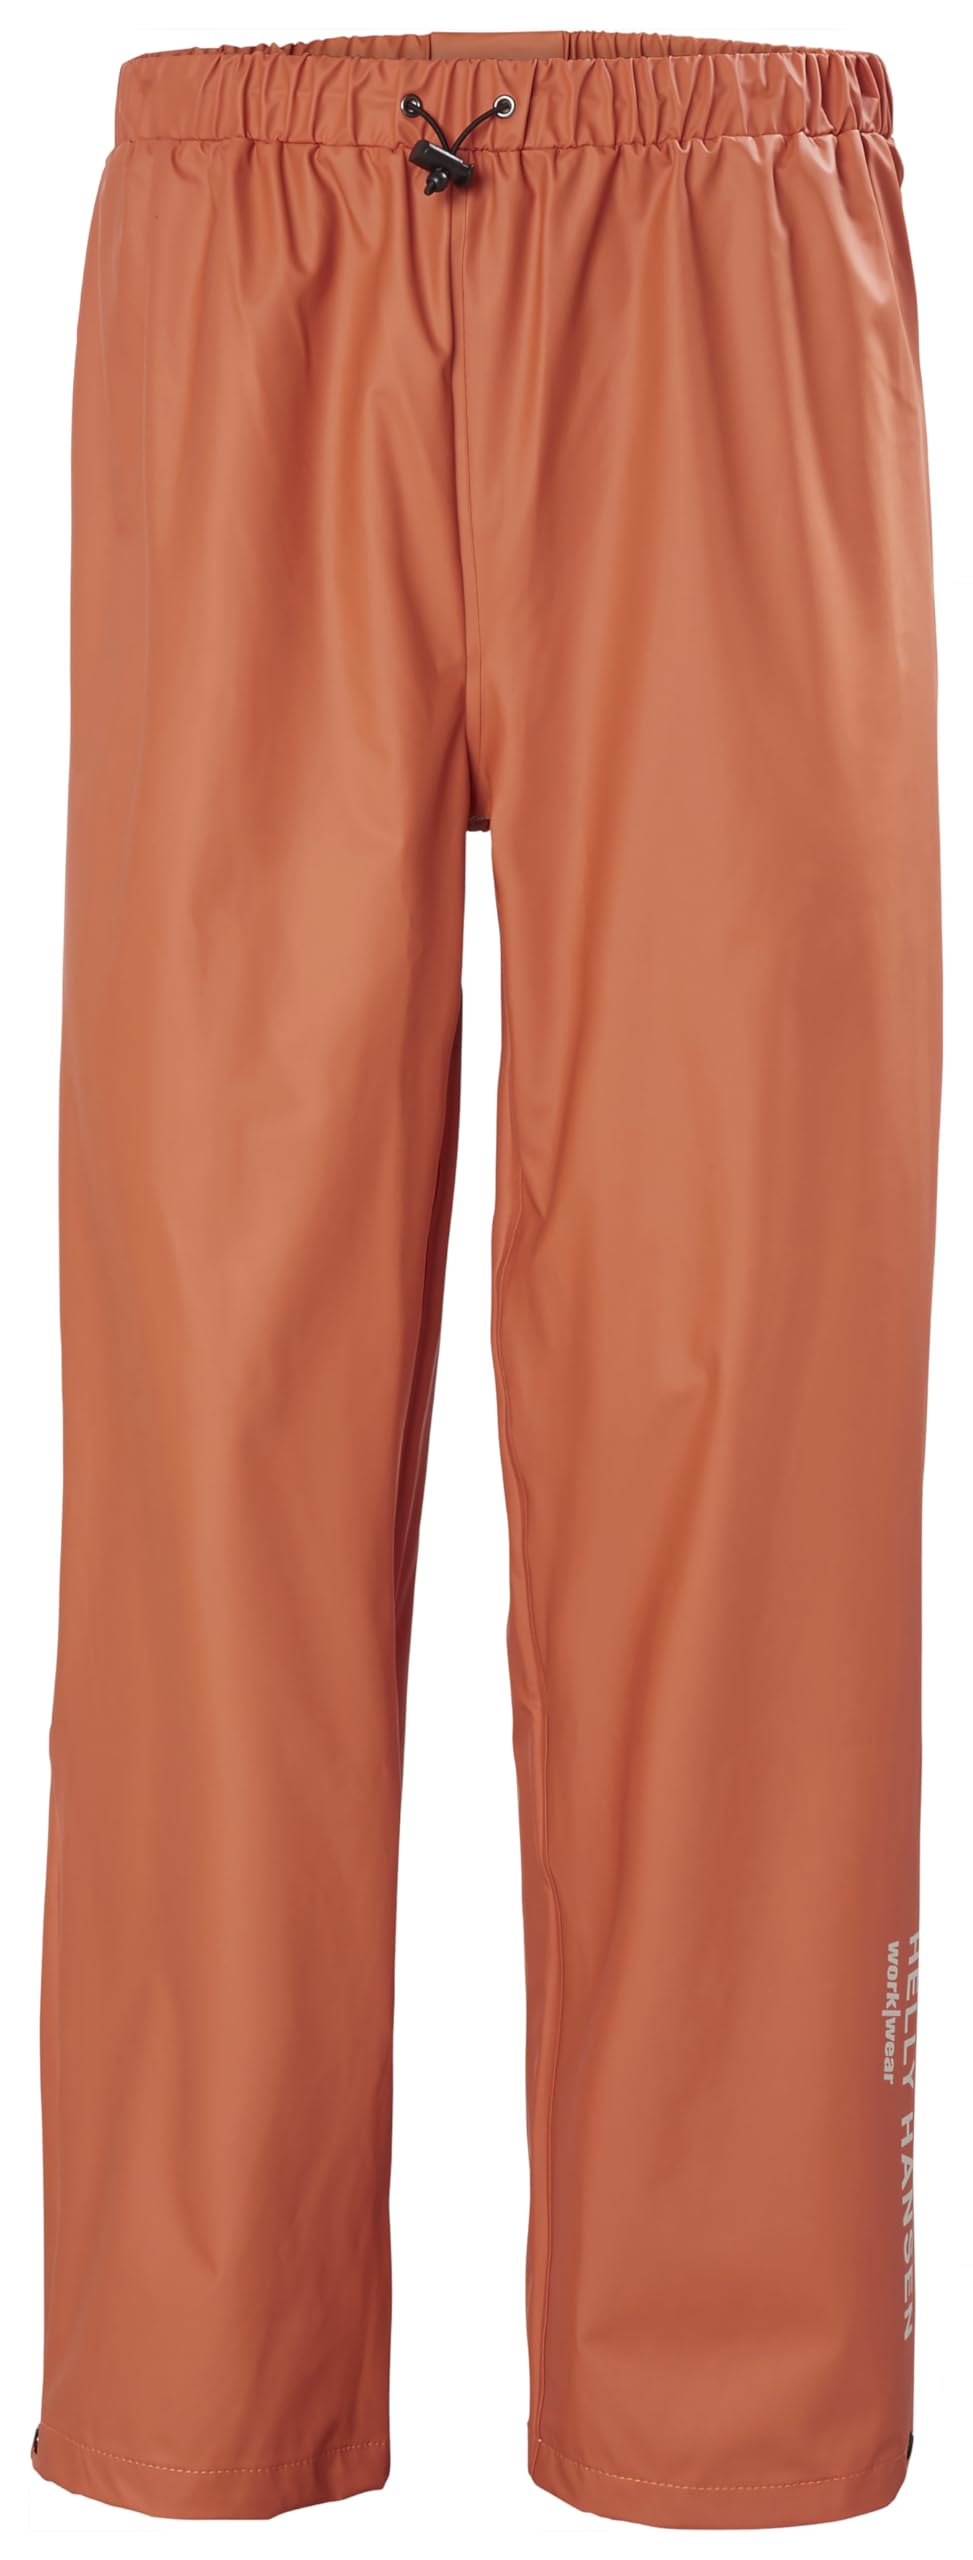 Helly Hansen Workwear Regenarbeitshose 100% wasserdicht, Orange (290), Gr. S